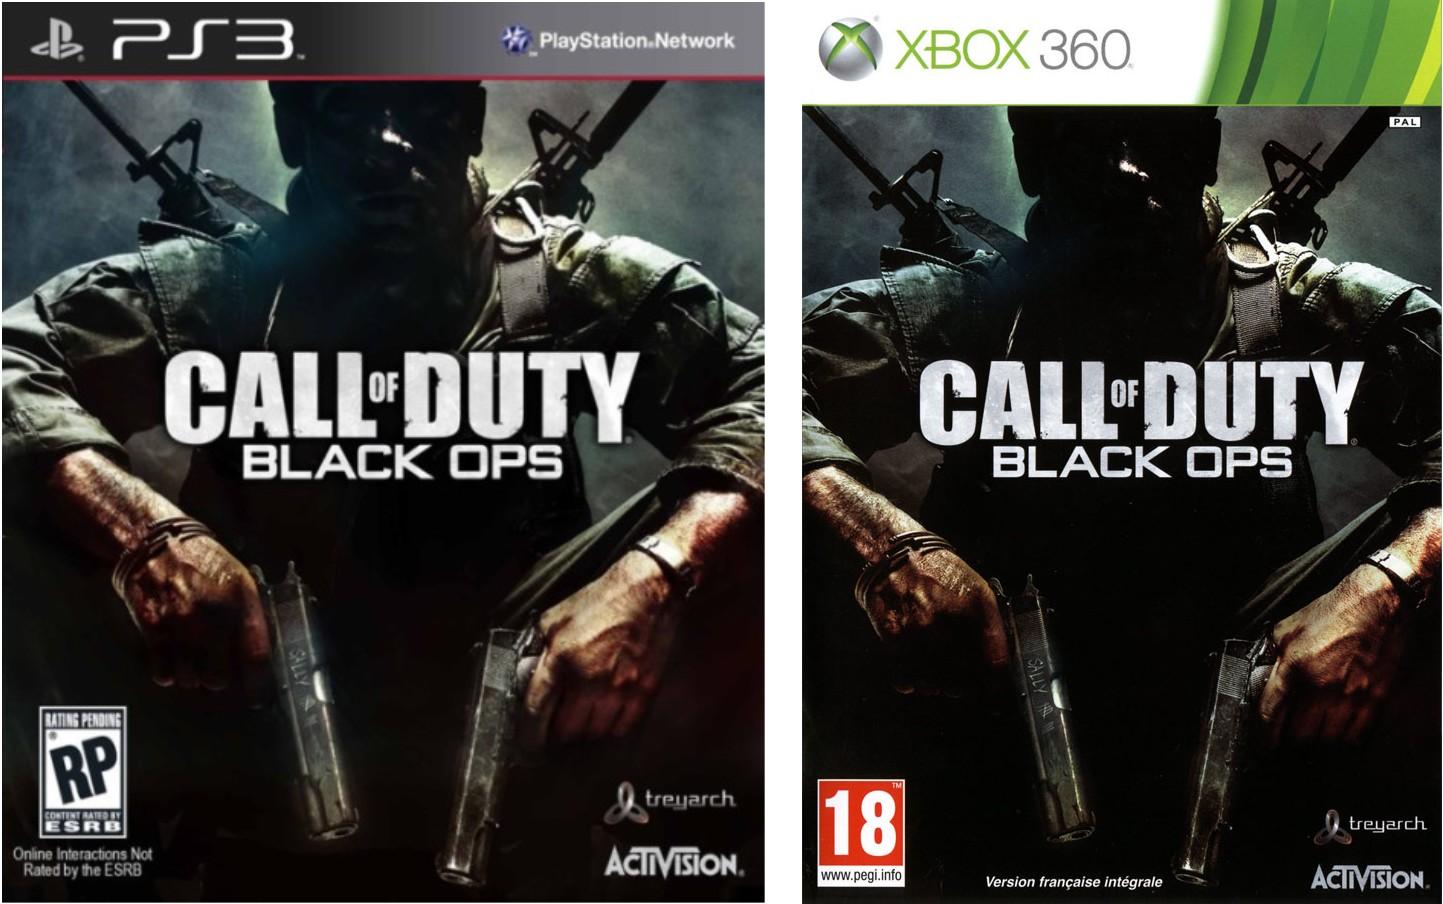 blackOps COD7 oosgame weebeetroc [DLC] Patch correcteur pour Call Of Duty Black Ops sur PS3.